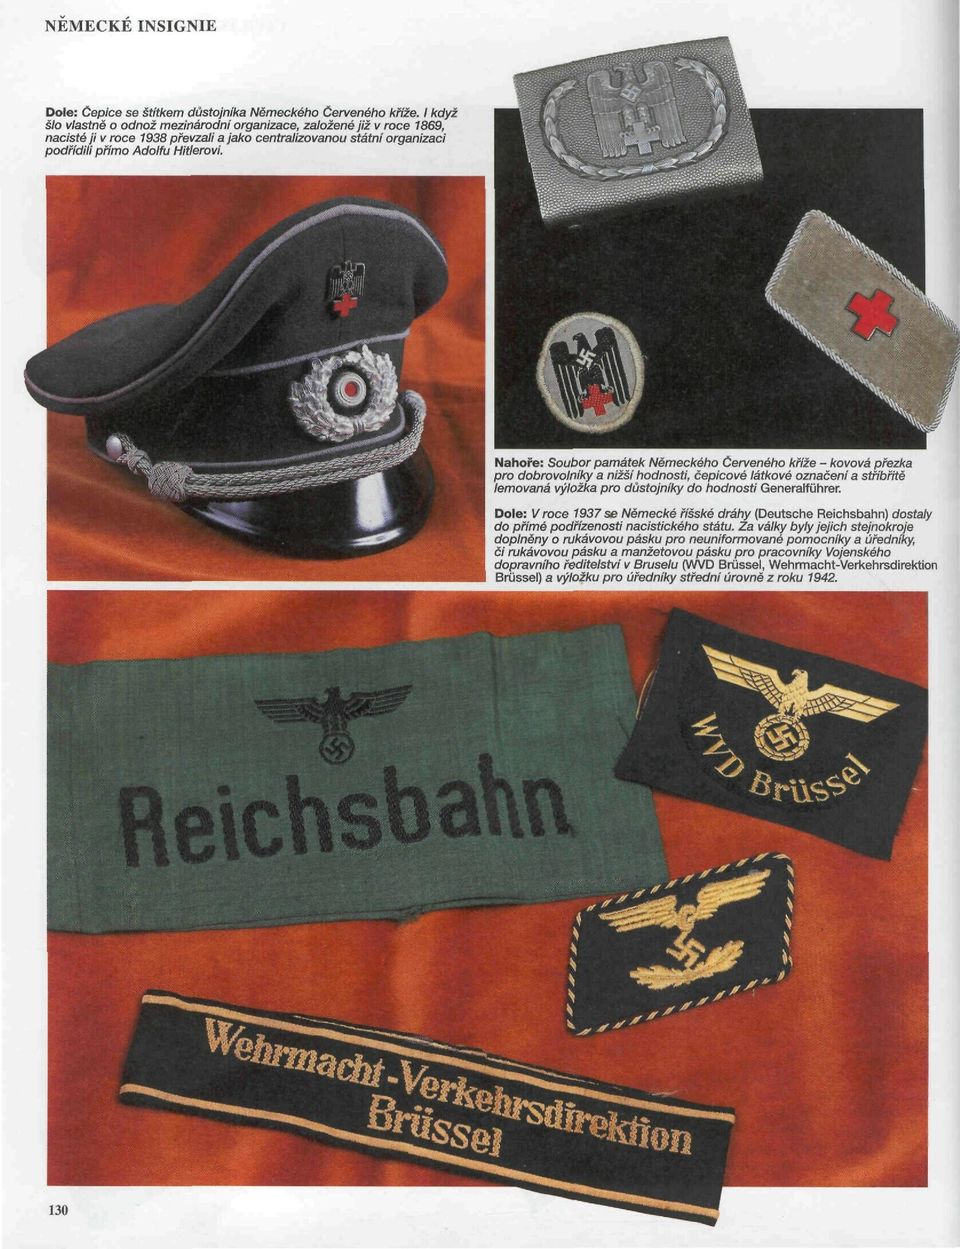 Nahoře: Soubor památek Německého Červeného kříže - kovová přezka pro dobrovolníky a nižší hodnosti, čepicové látkové označeni a stříbřitě lemovaná výložka pro důstojníky do hodnosti Generalführer.